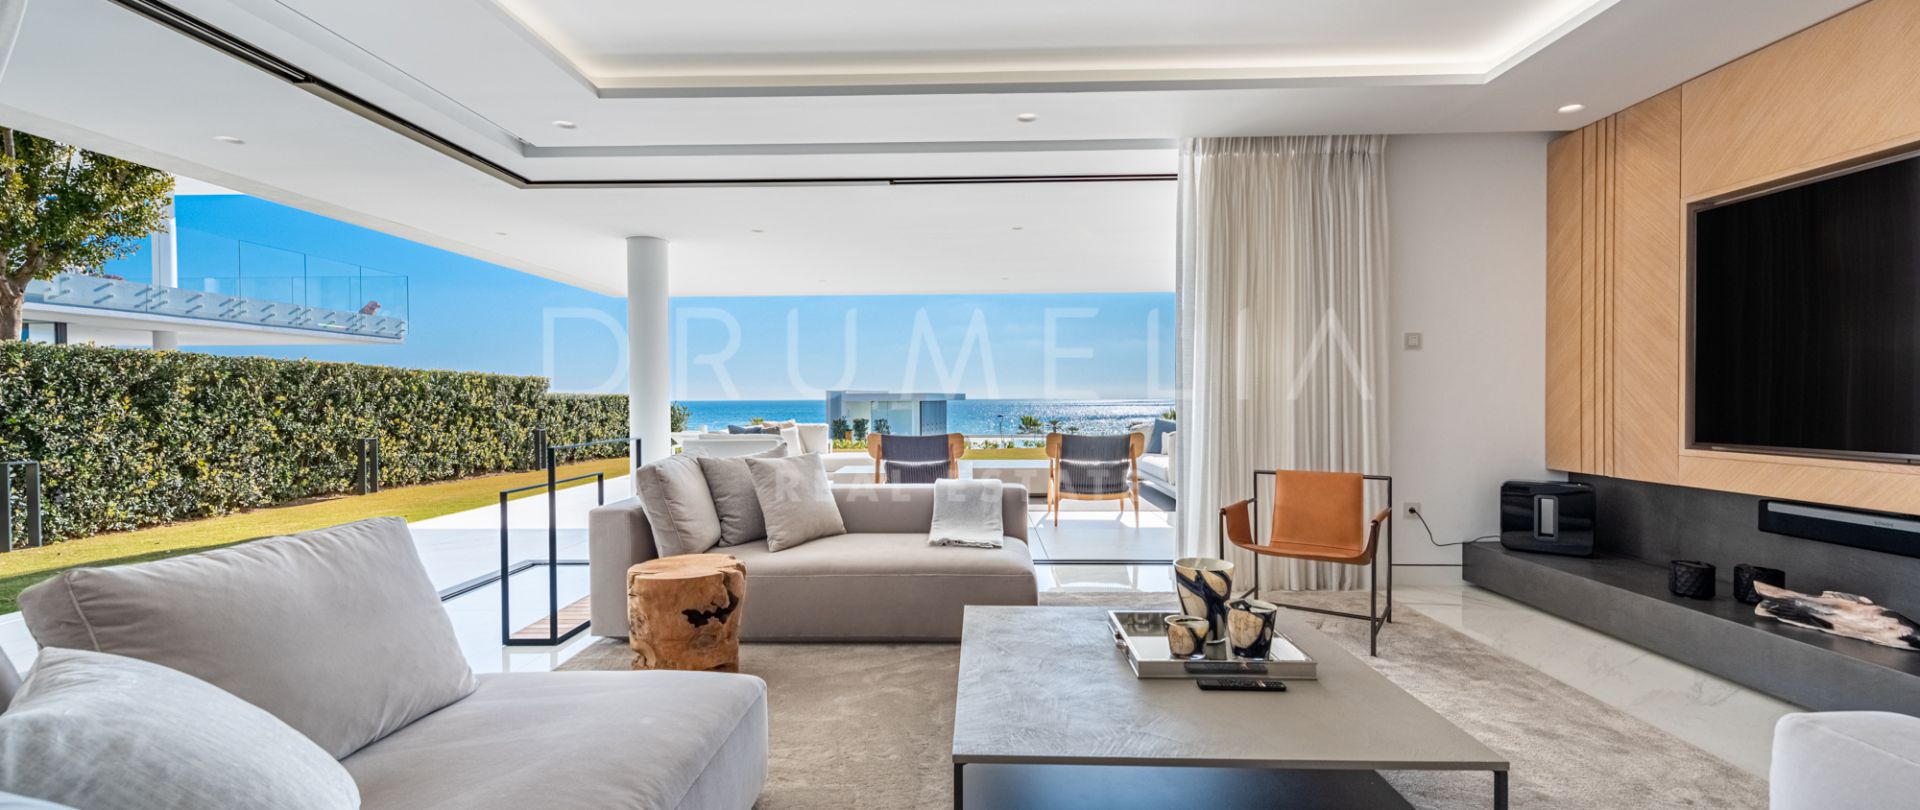 Wunderschönes Apartment am Strand mit Panoramablick auf das Meer in Emare, New Golden Mile